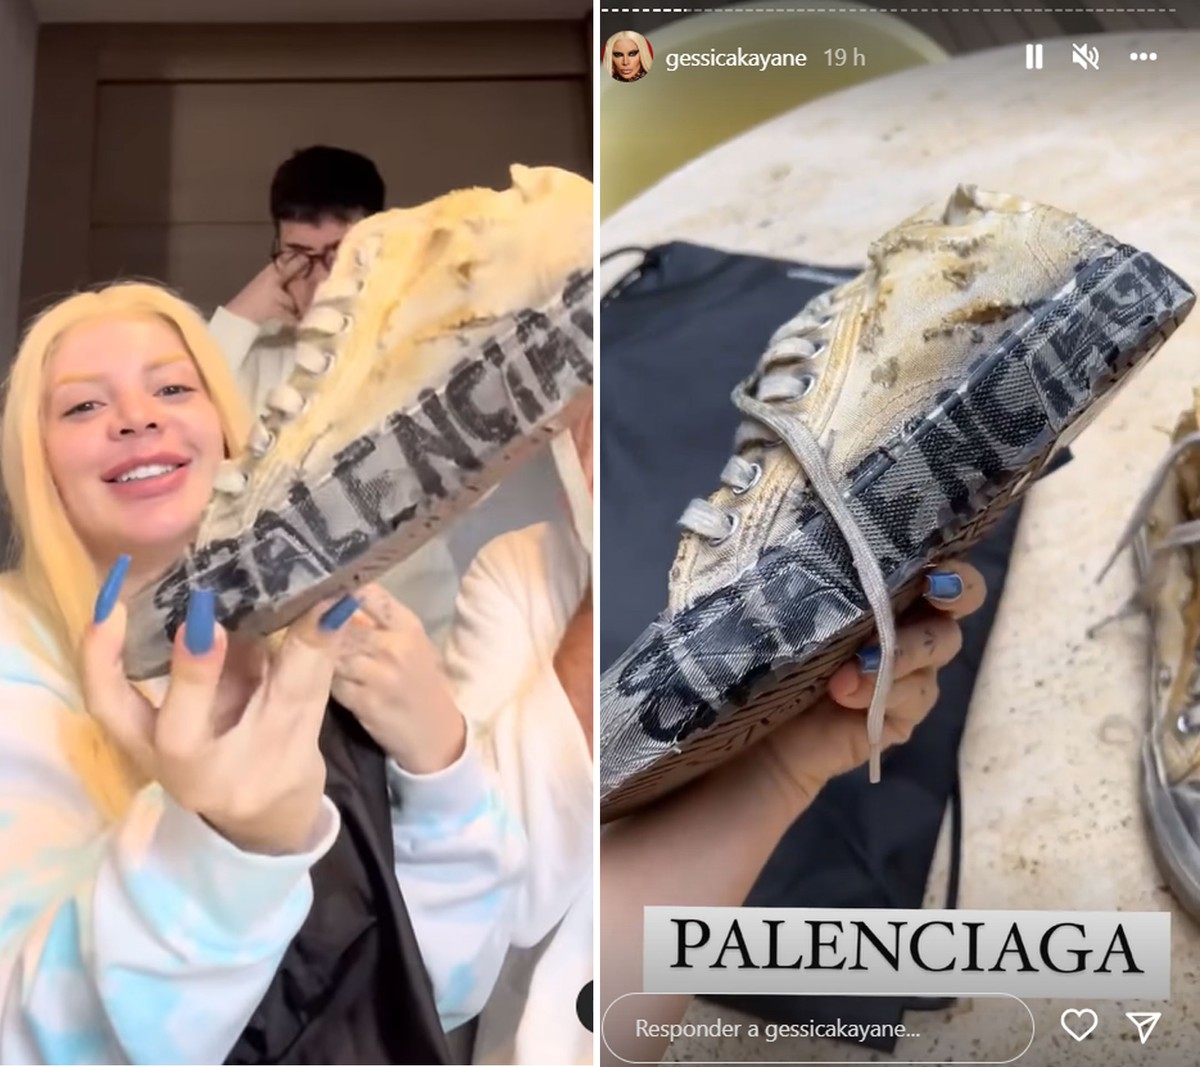 Gkay compra zapatillas ‘arruinadas’ de Balenciaga por R$ 10.000: ‘No puedo creerlo’ |  Moda y belleza